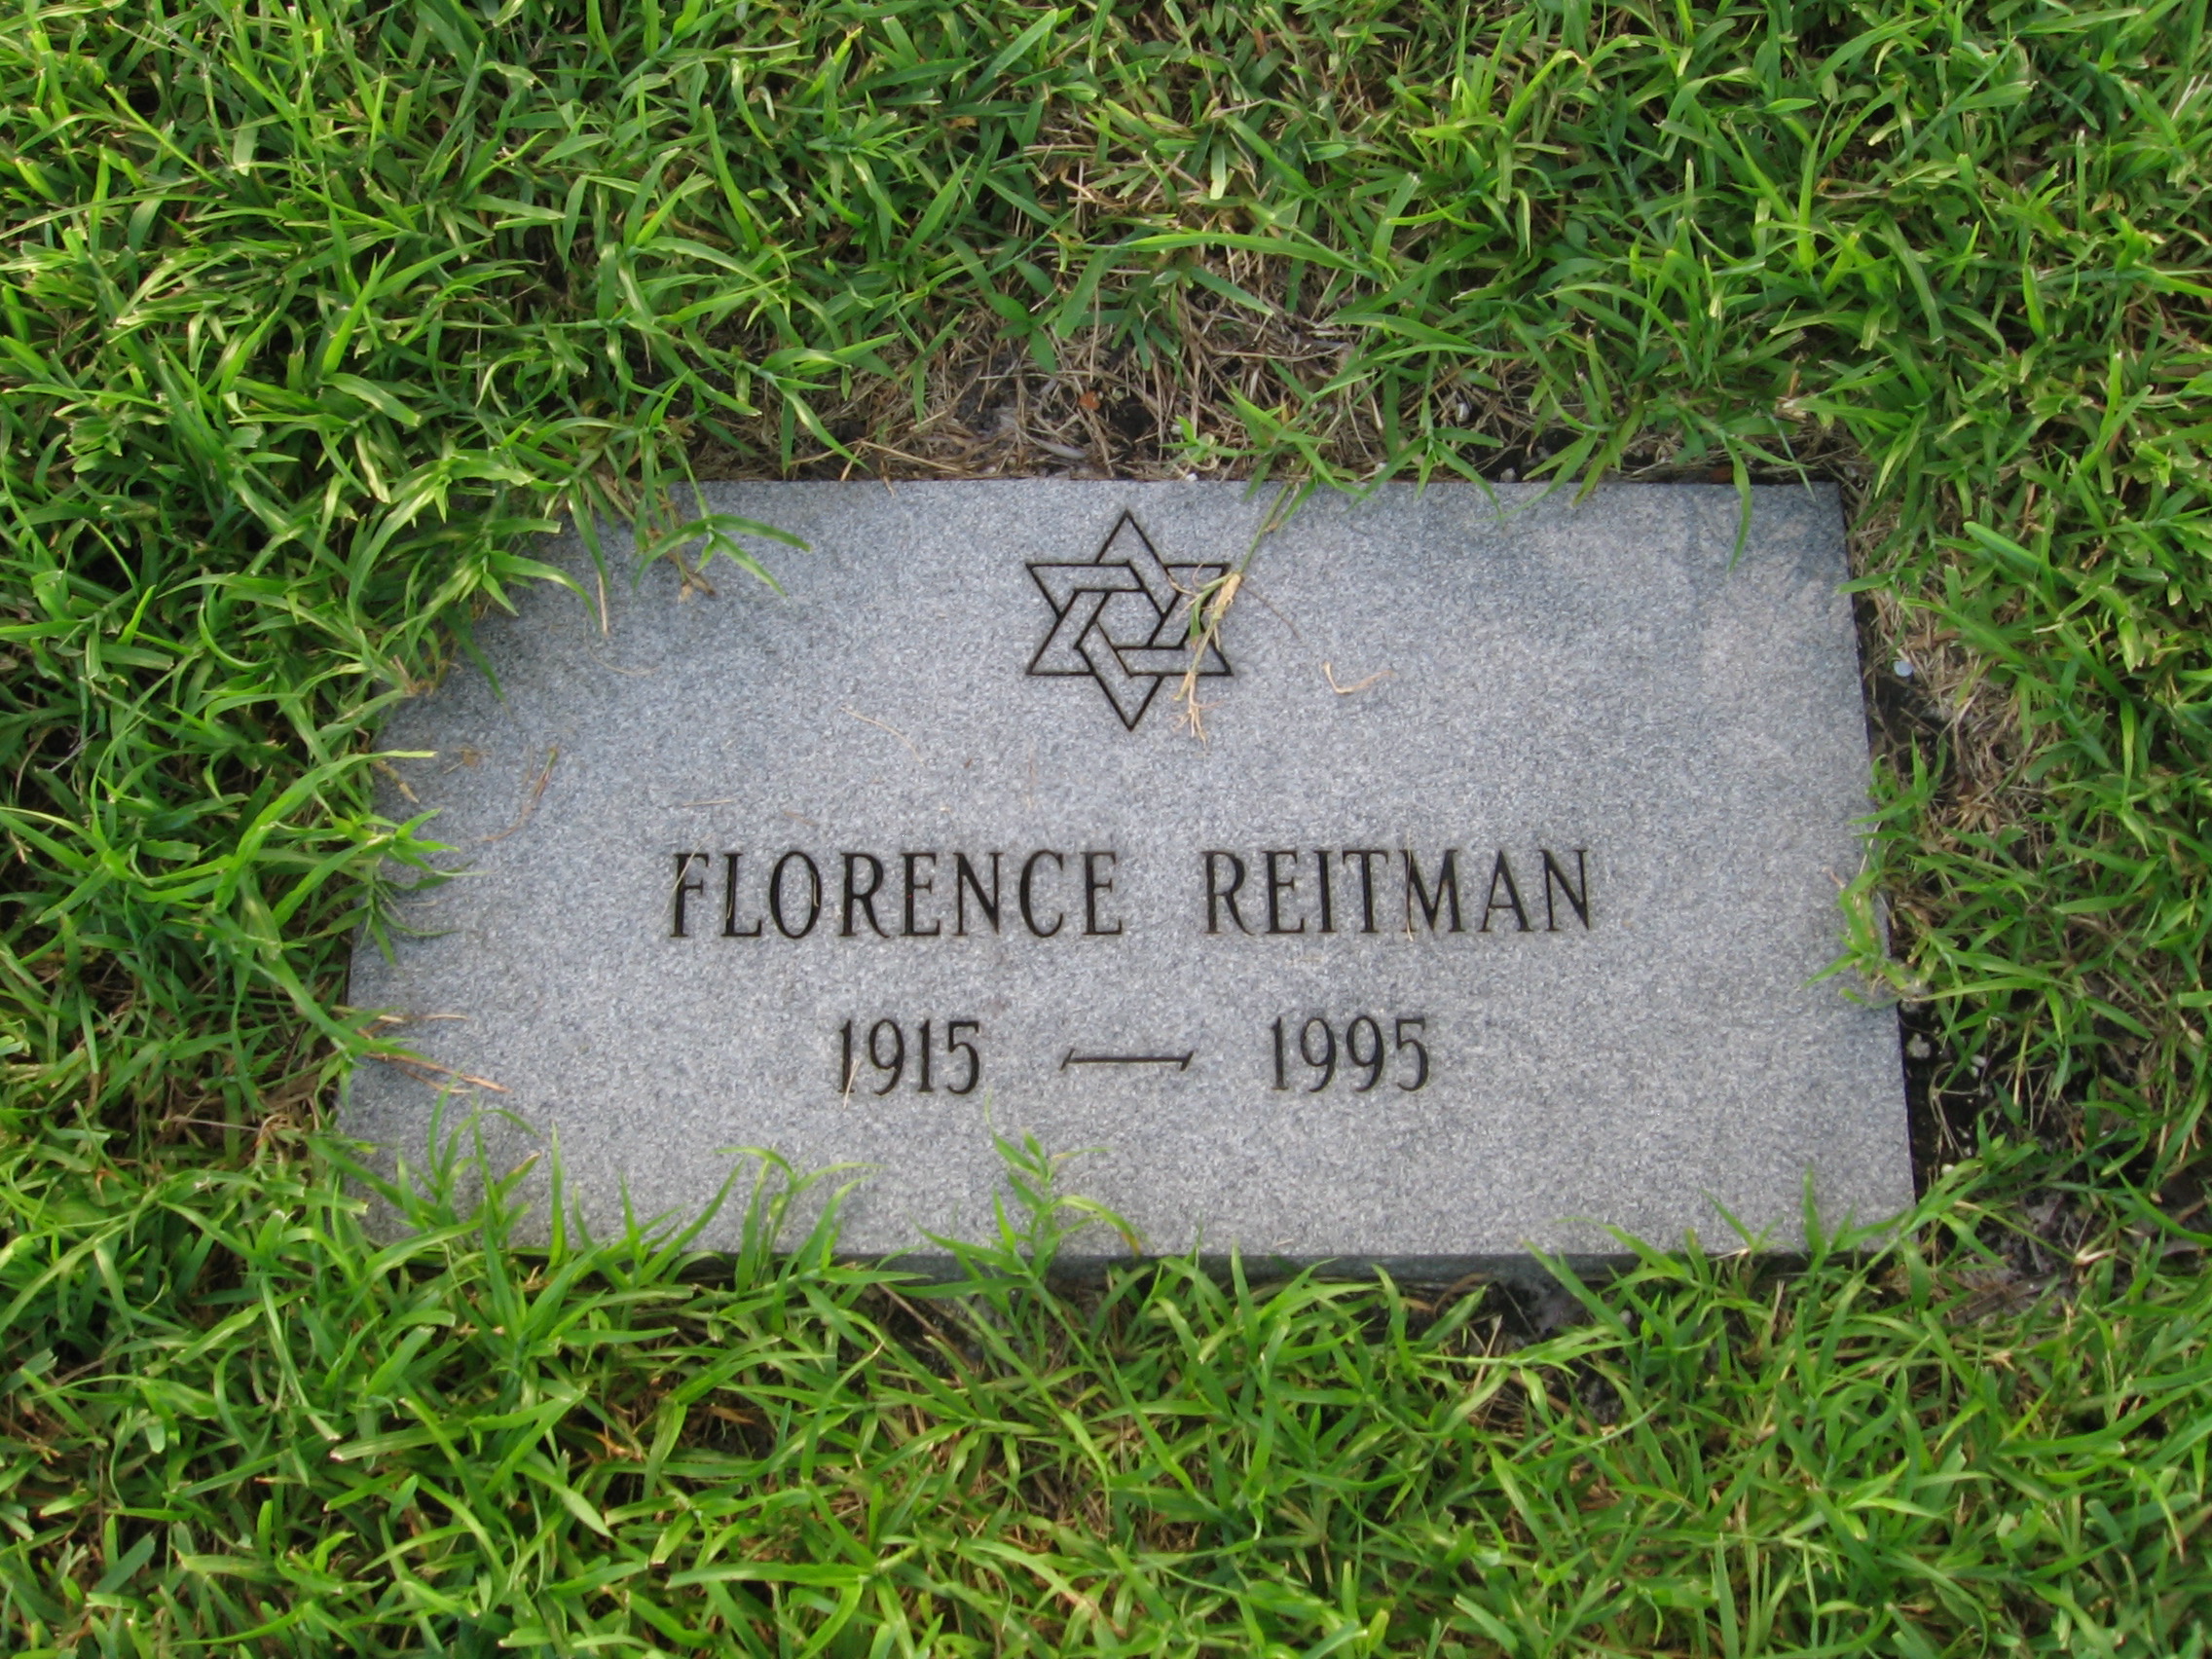 Florence Reitman